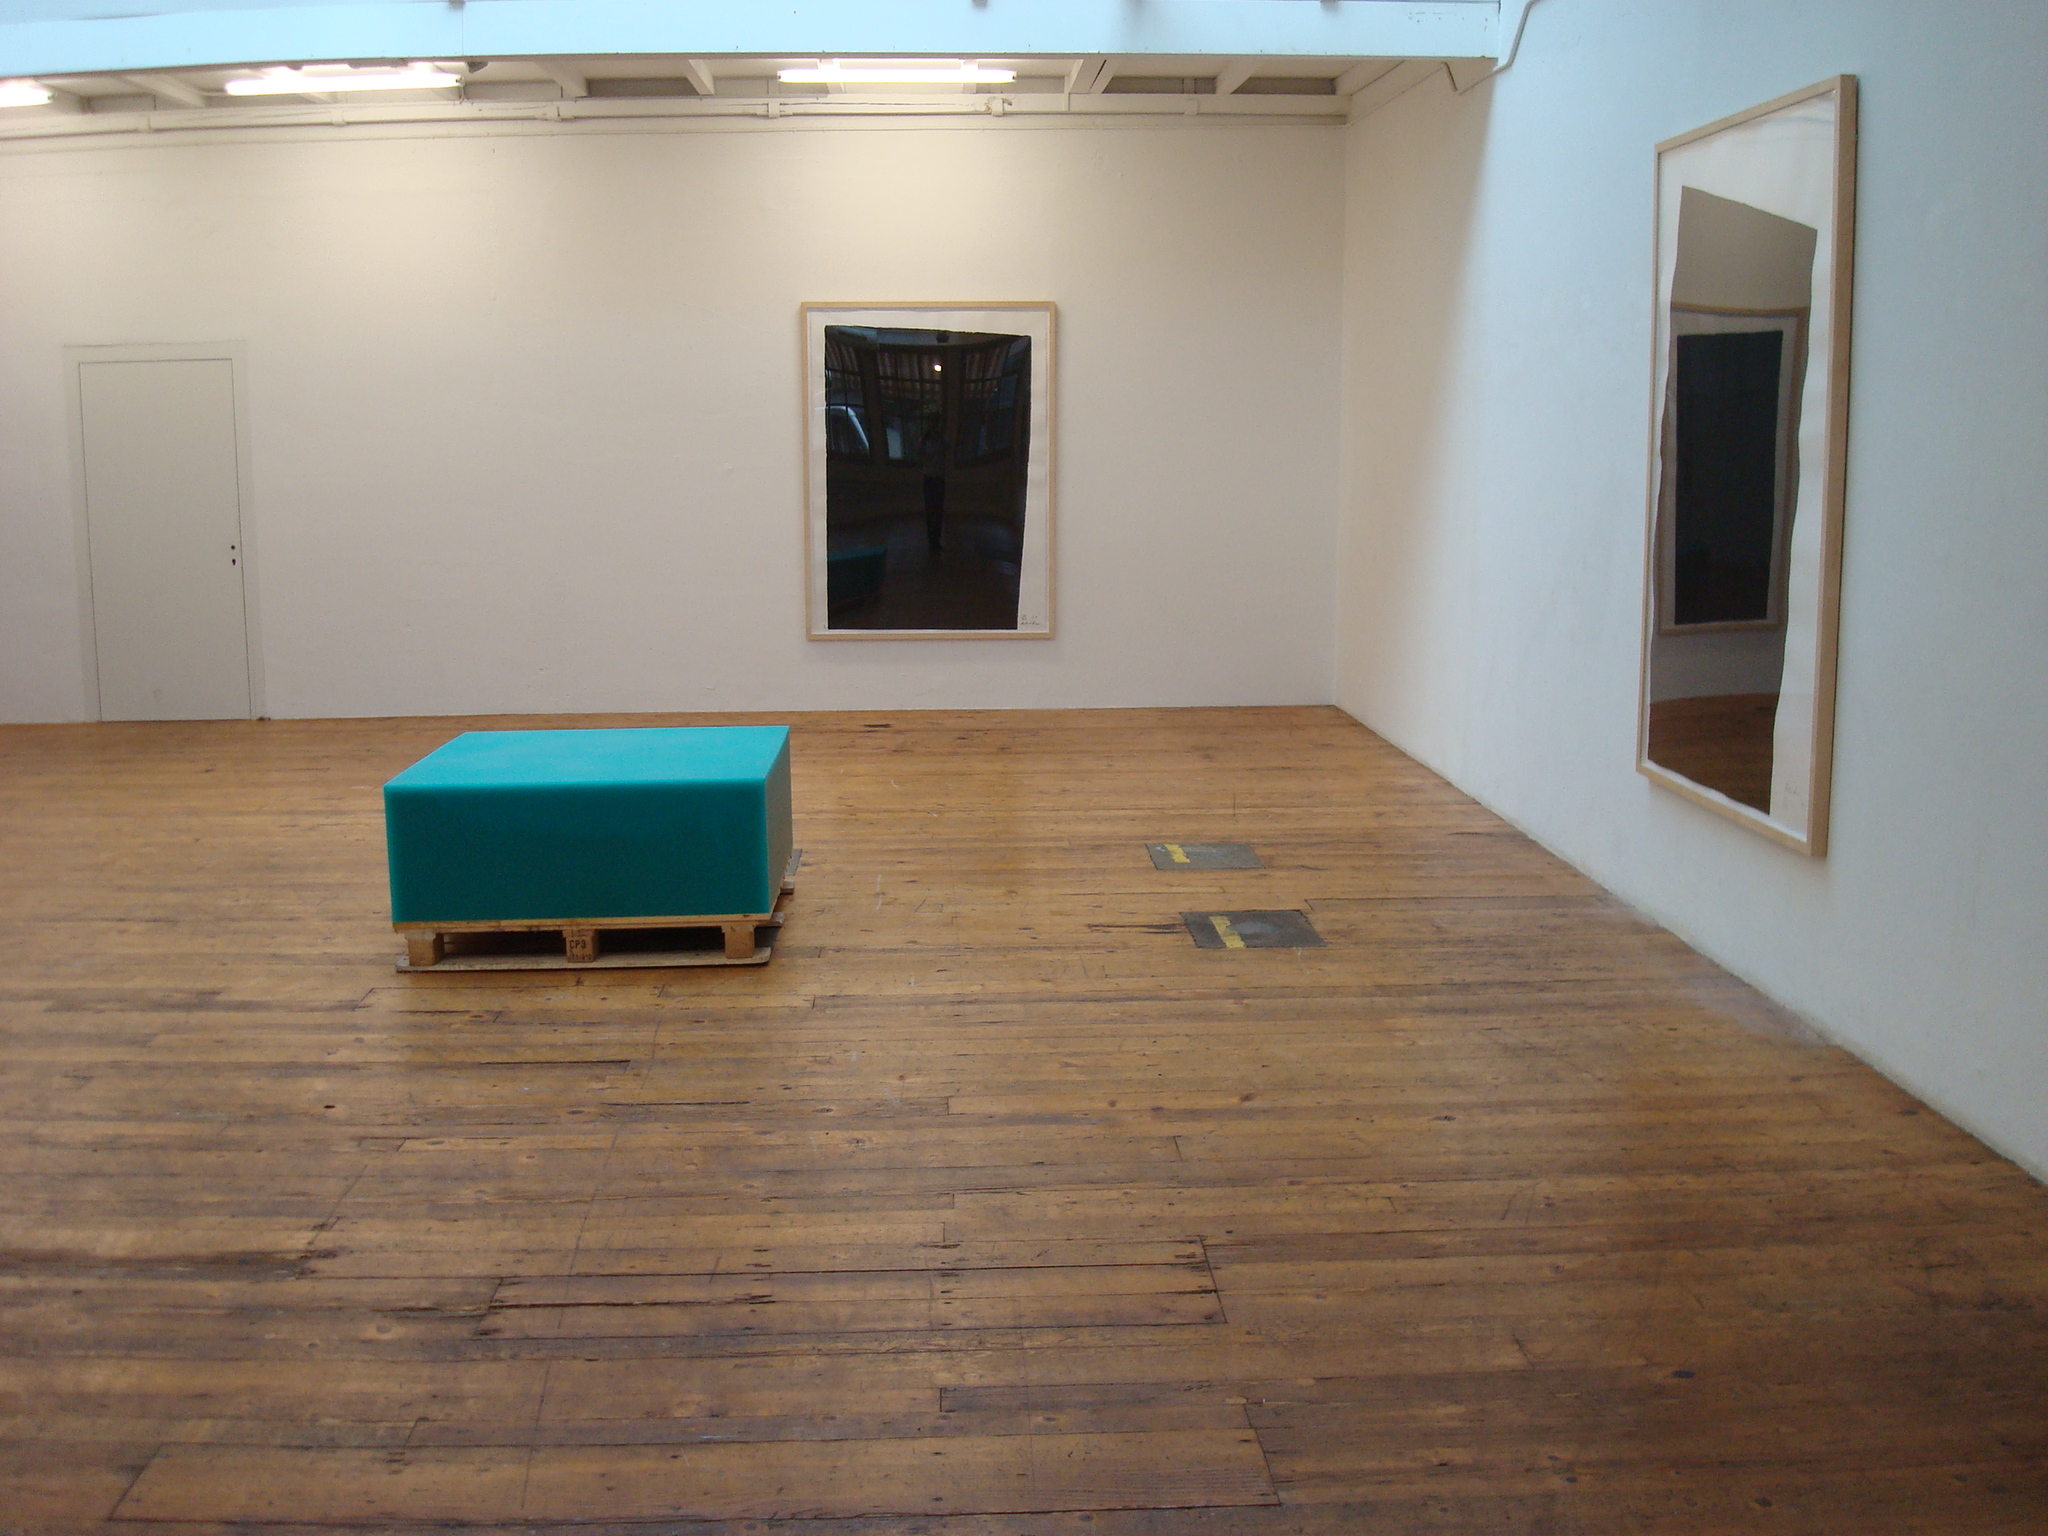 Large Scale Etchings 1981 - 1990
Ausstellungsansicht, 2010, Projektraum g27, Zürich, Fabian & Claude Walter Galerie mit Werken von Richard Serra und Herbert Hamak.